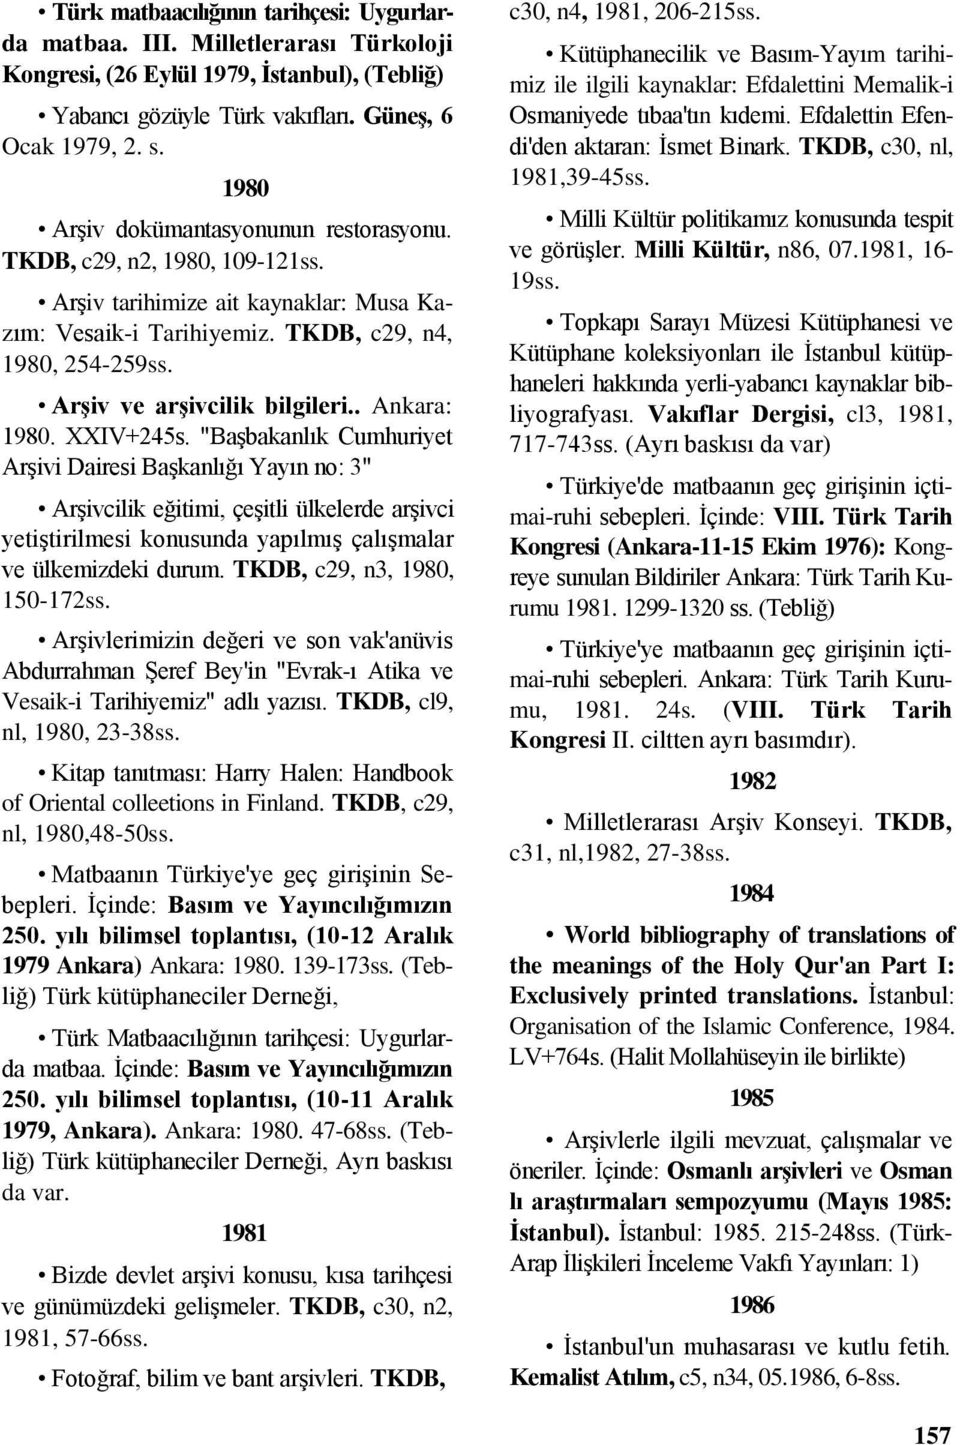 Arşiv ve arşivcilik bilgileri.. Ankara: 1980. XXIV+245s.